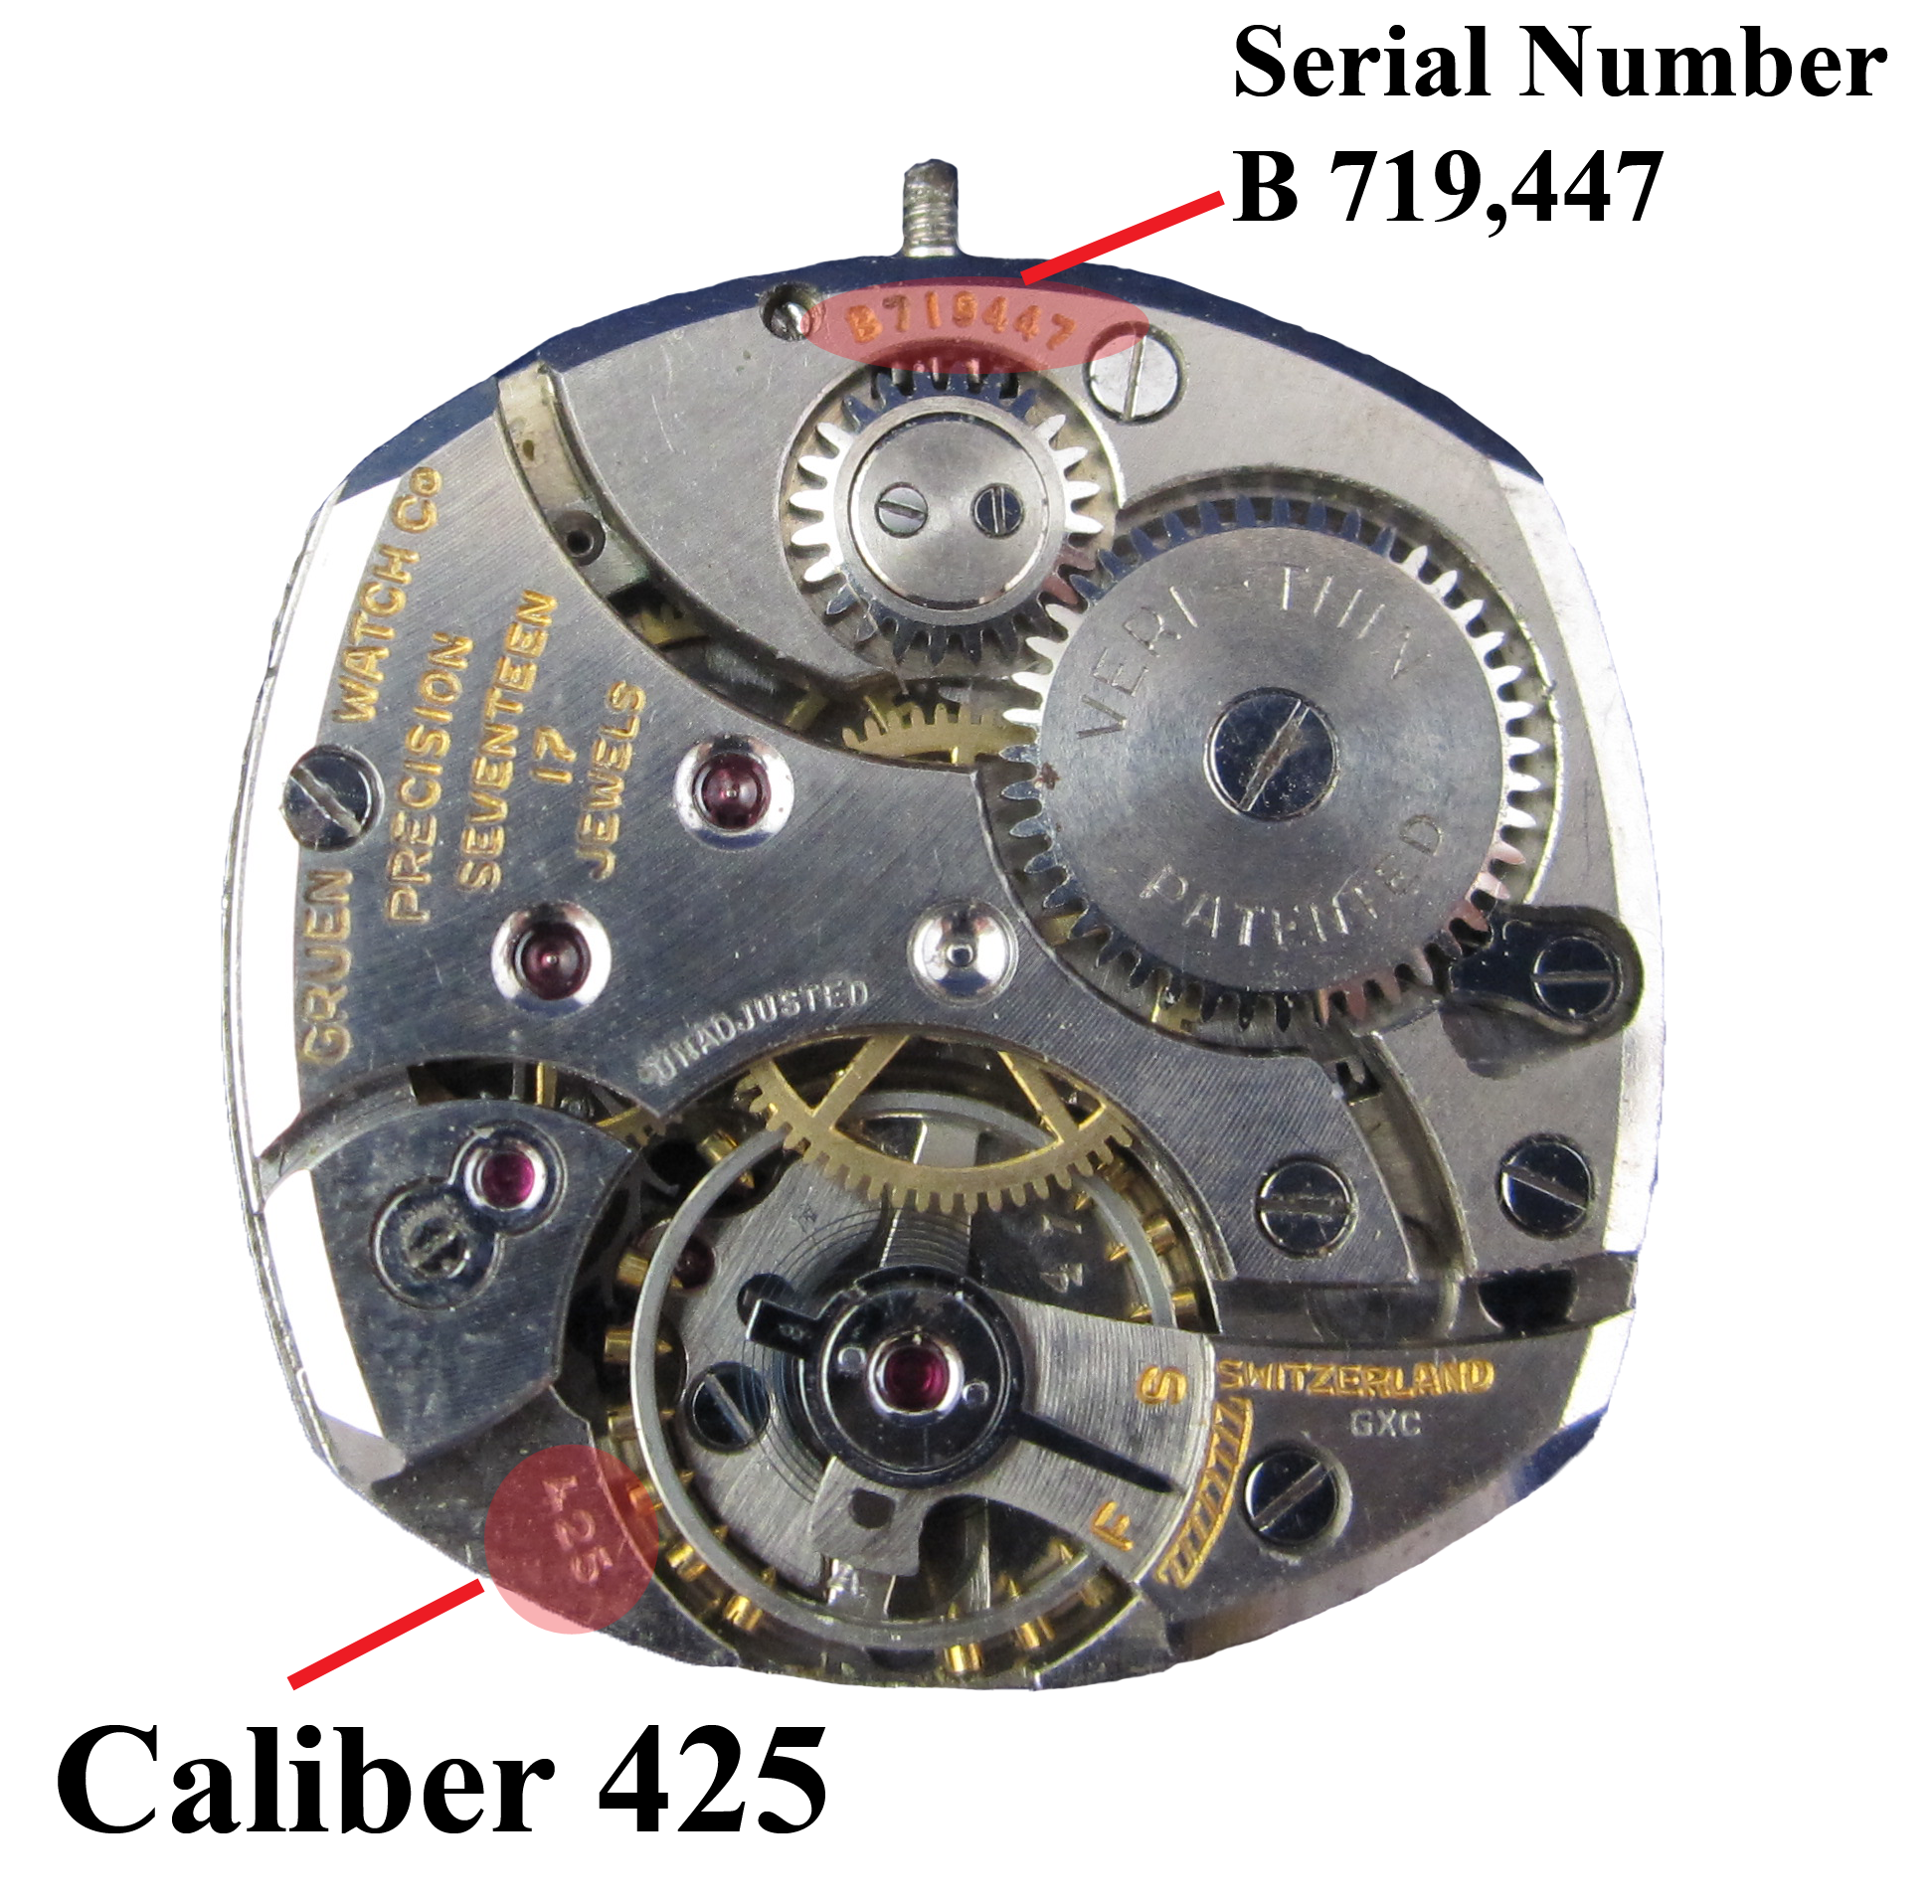 wrist watch serial number lookup